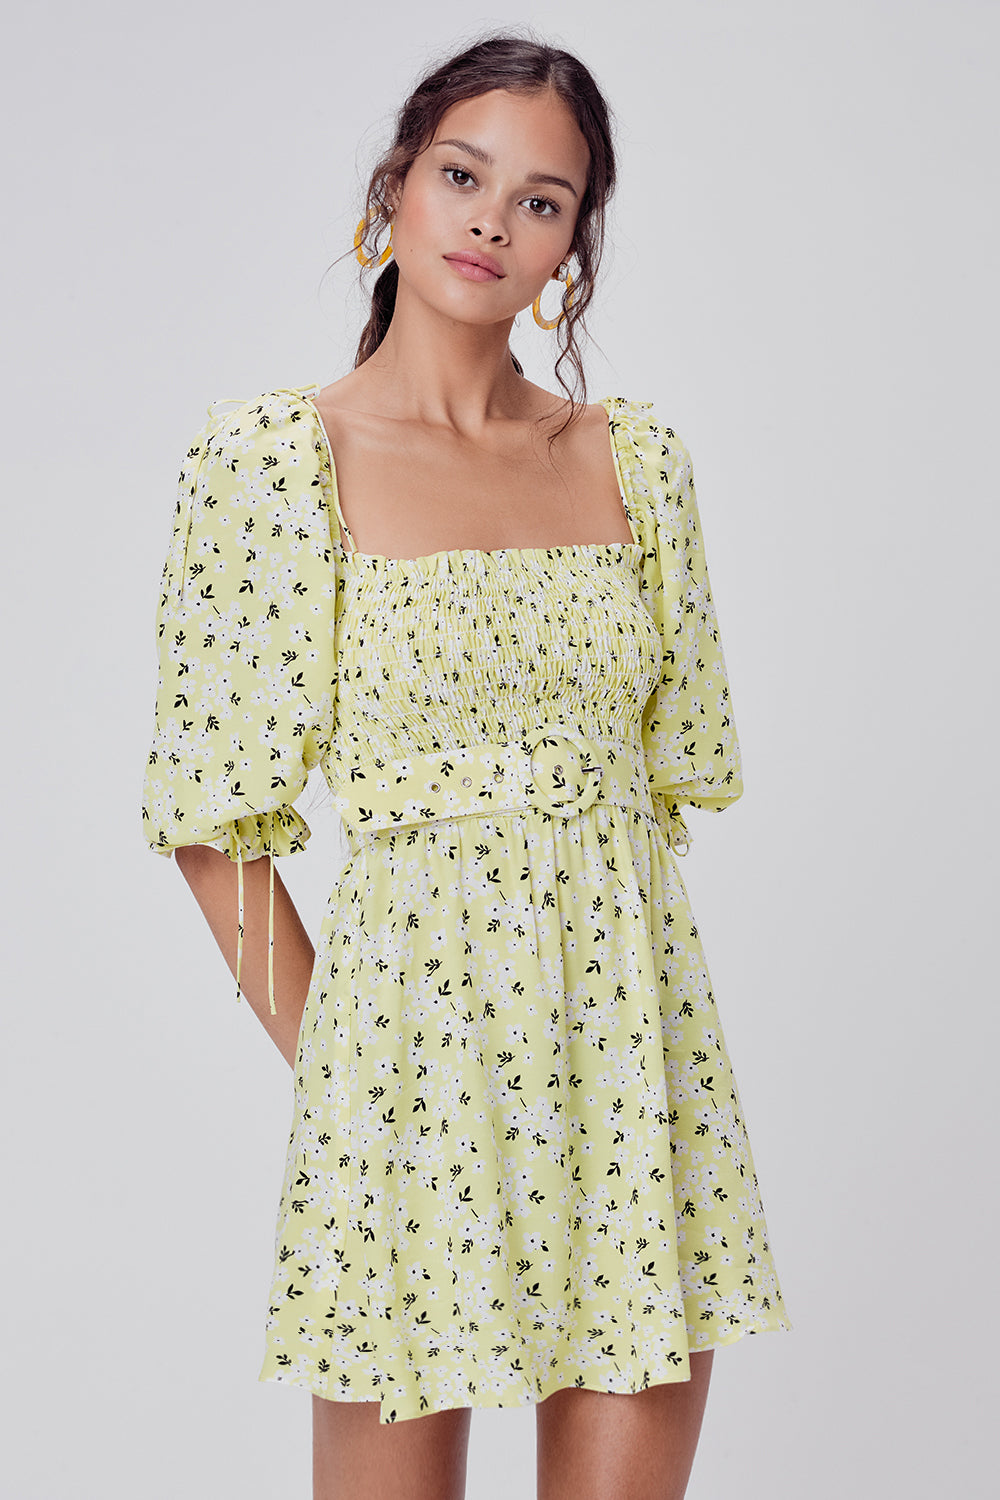 for love and lemons polka dot dress